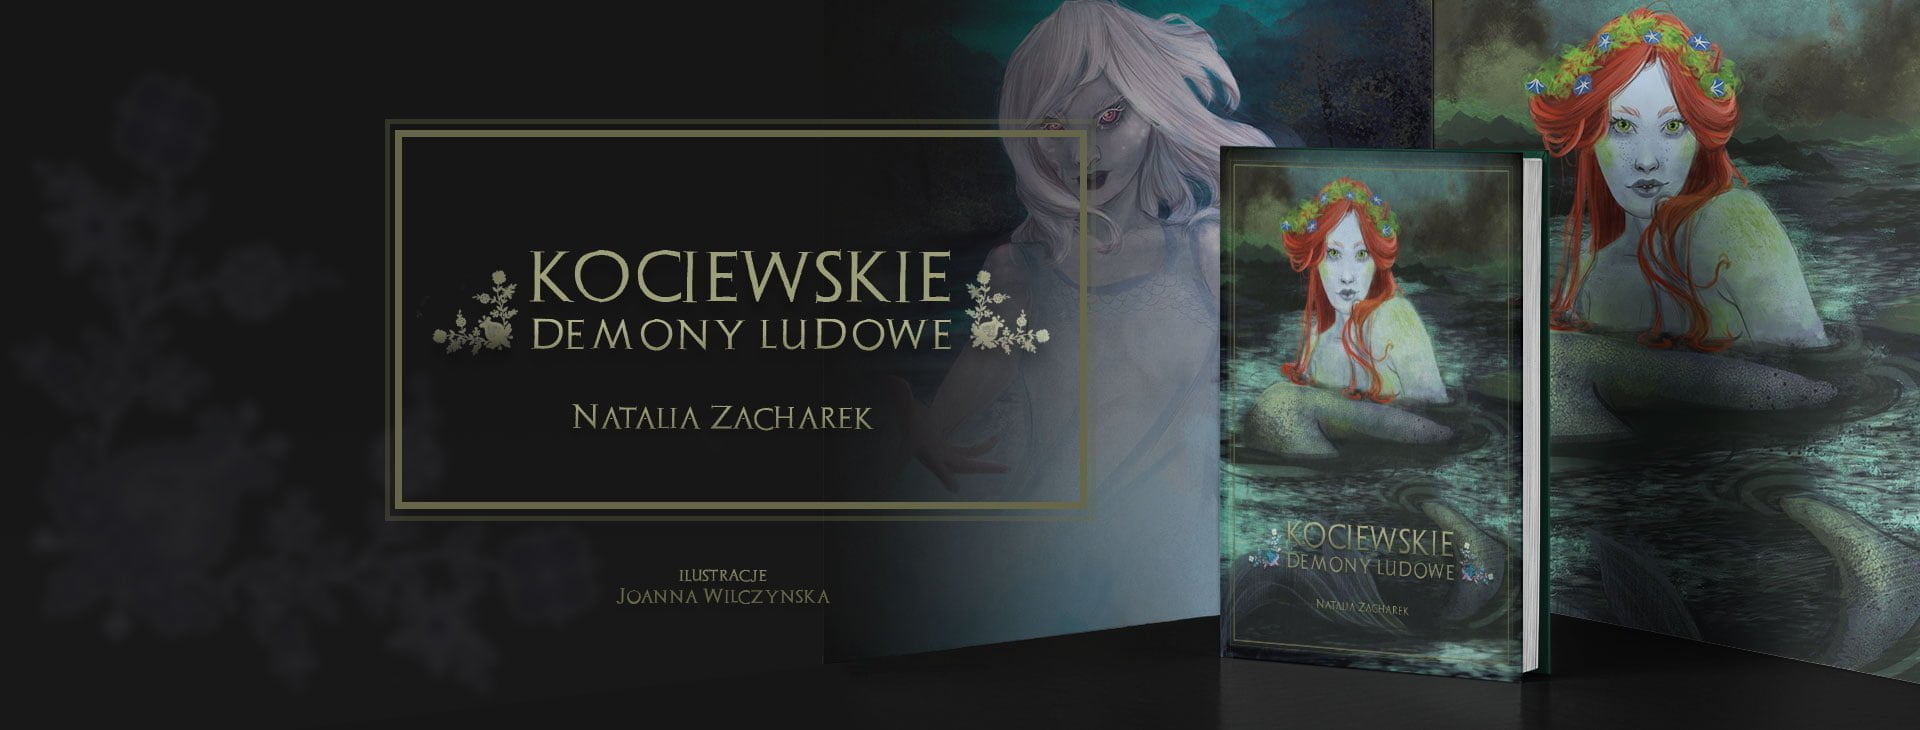 Promocja książki Natalii Zacharek "Kociewskie demony ludowe"